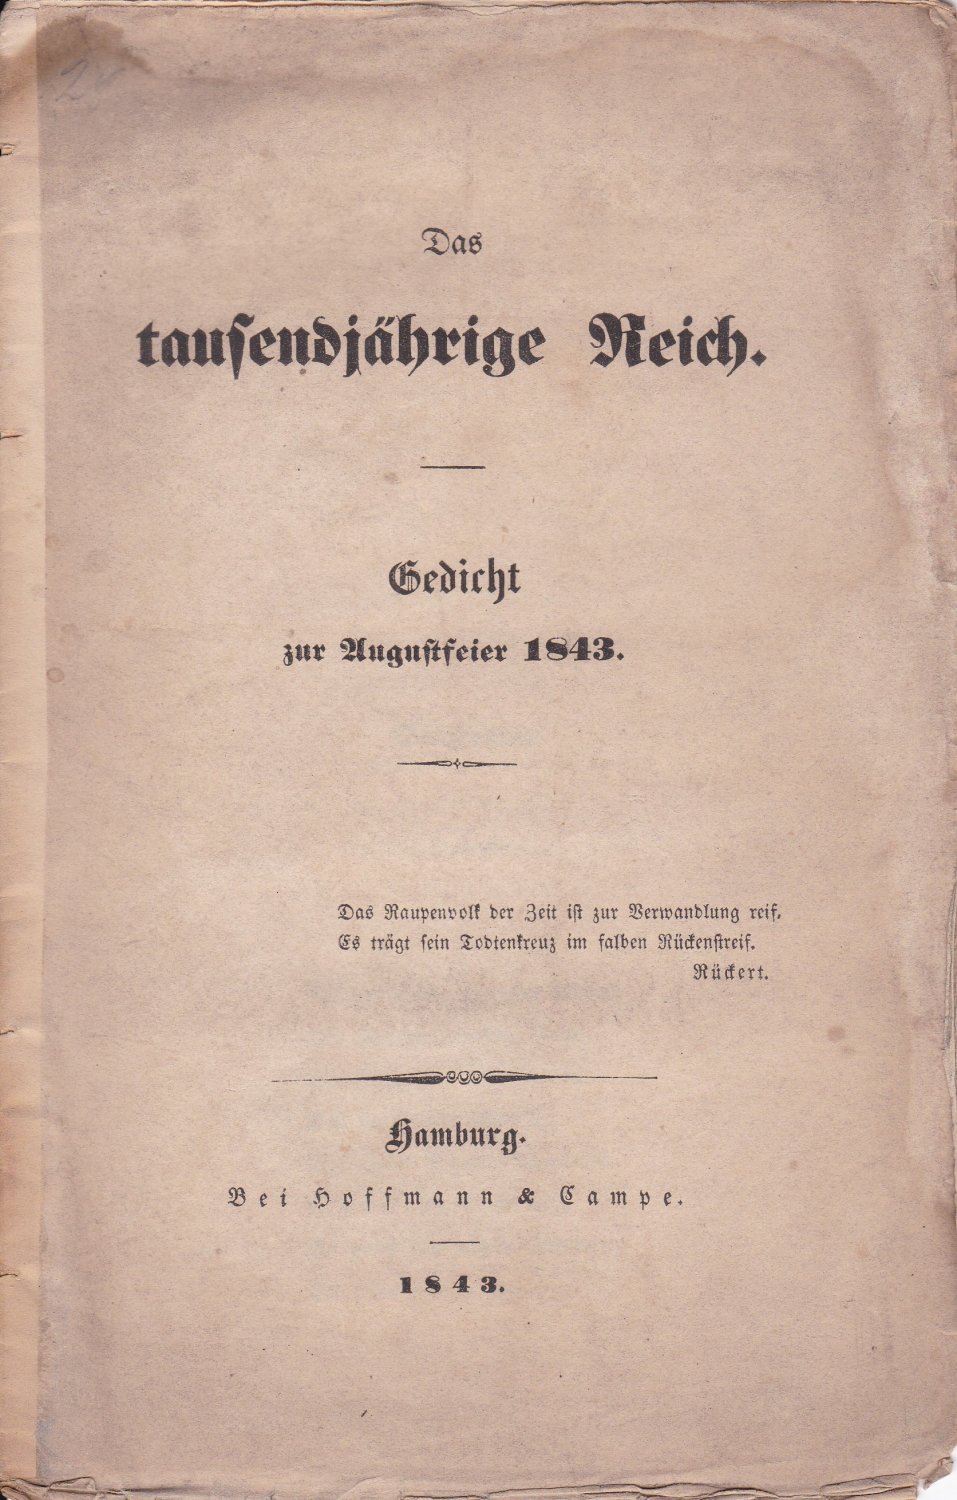 [ GLITZA, Johann Friedrich Adolf]:  Das tausendjährige Reich. Gedicht zur Augustfeier 1843. 